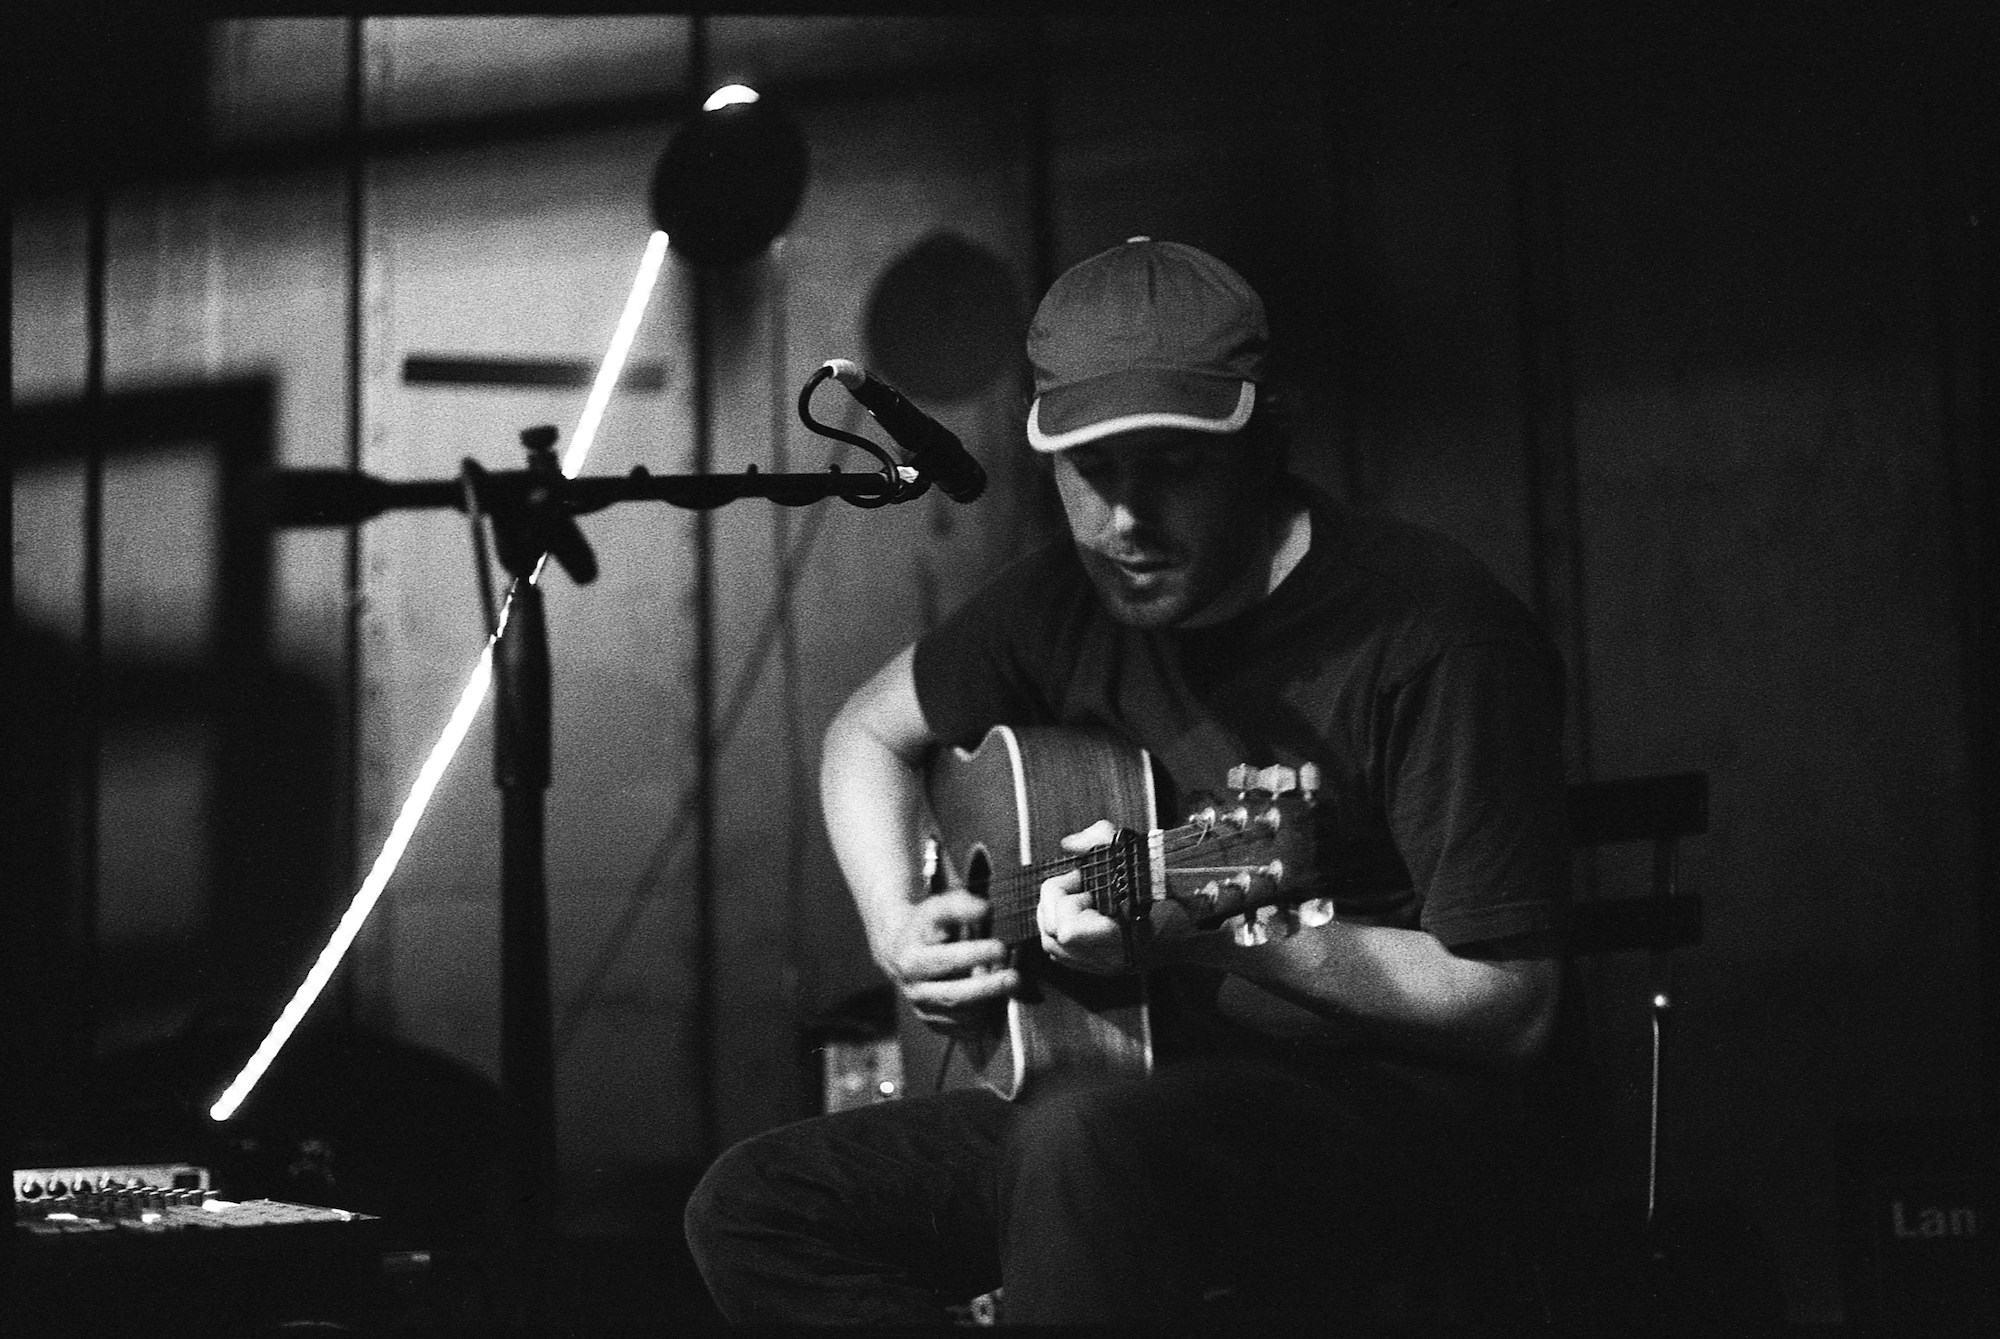 Black & white photo of Ignatz playing guitar by Mark Rietveld